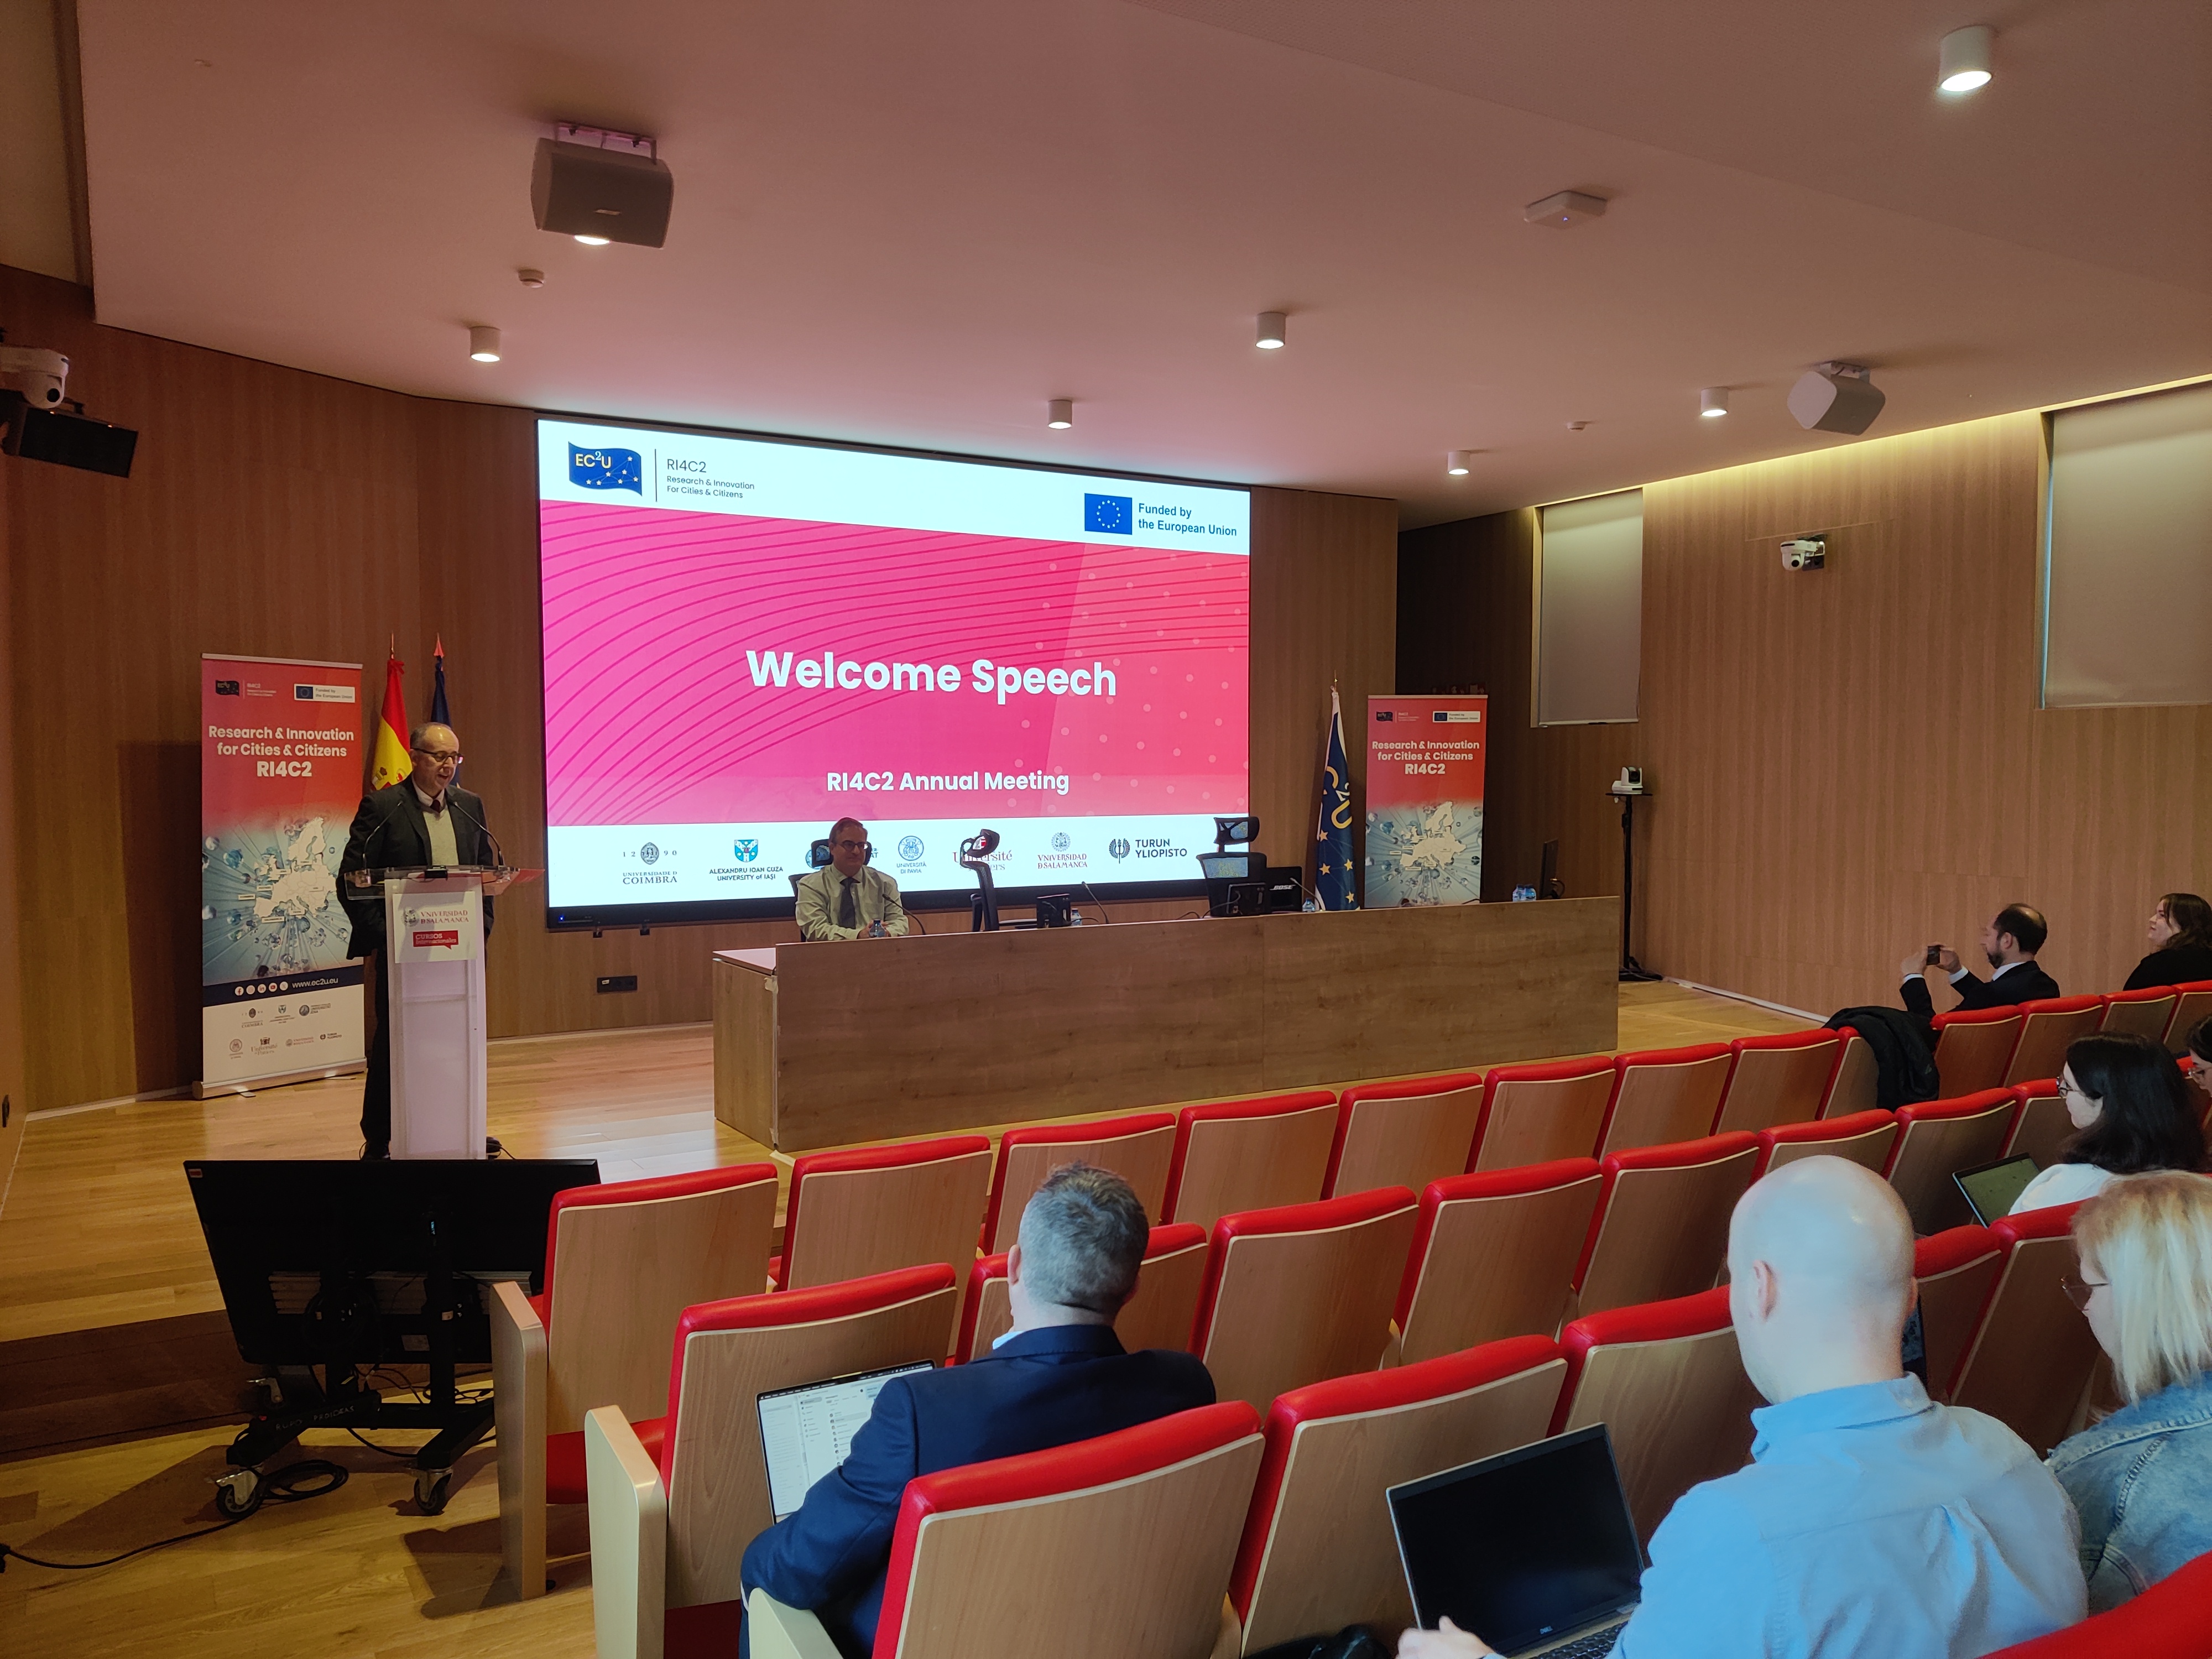 La Universidad de Salamanca acoge la reunión anual del proyecto europeo RI4C2